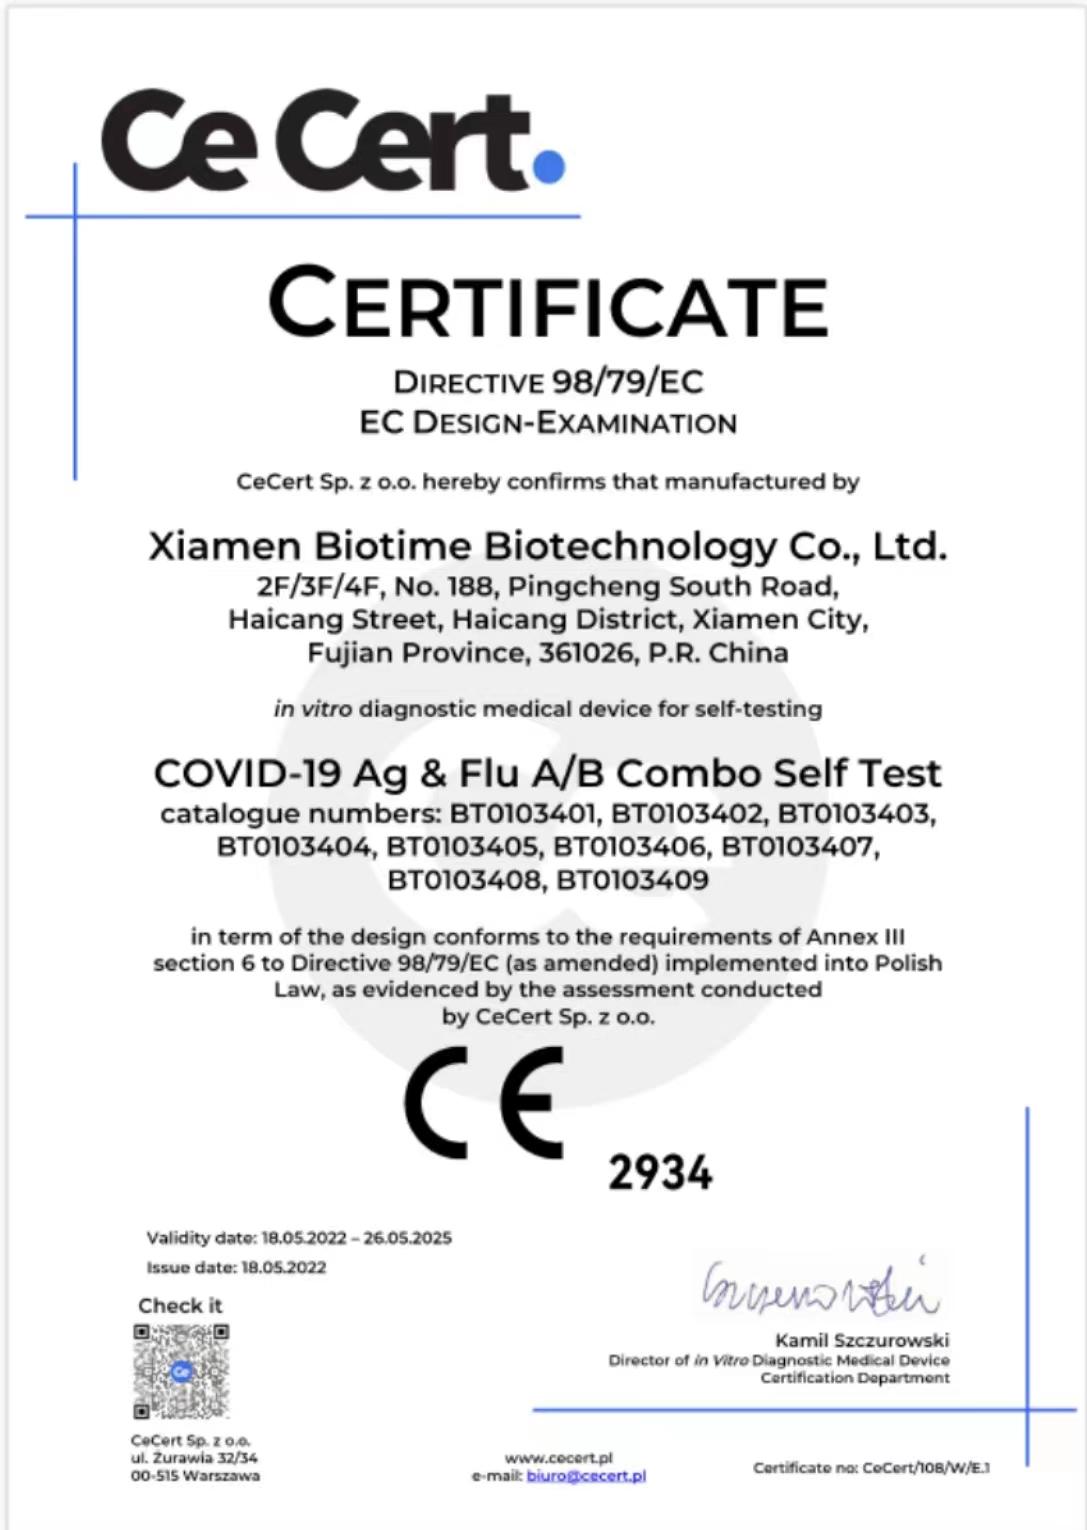 biotime's Teste combinado COVID-19 ag & flua/b obtém marca CE para autoteste
